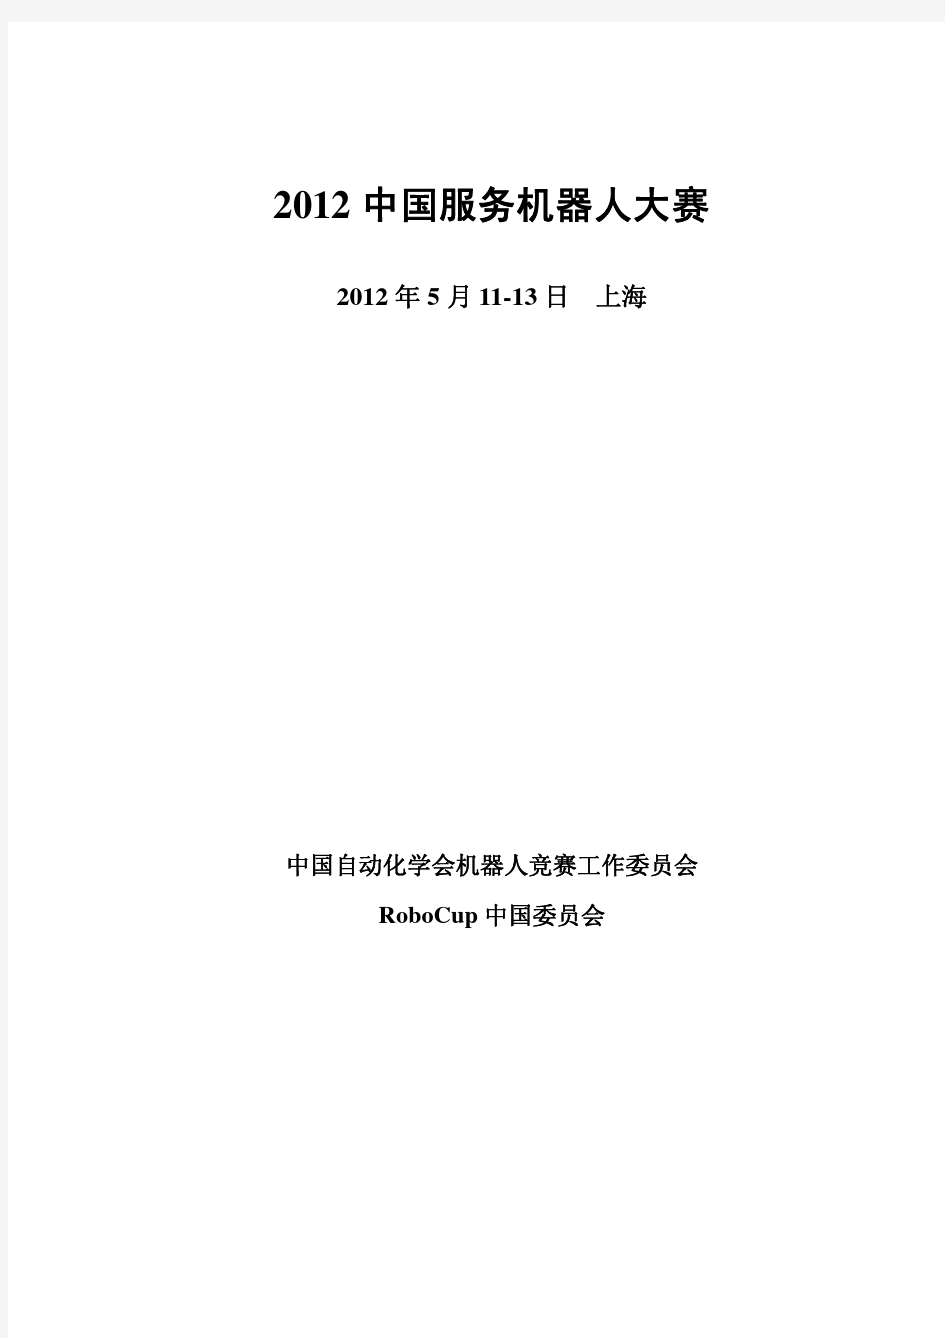 2012中国服务机器人大赛通知